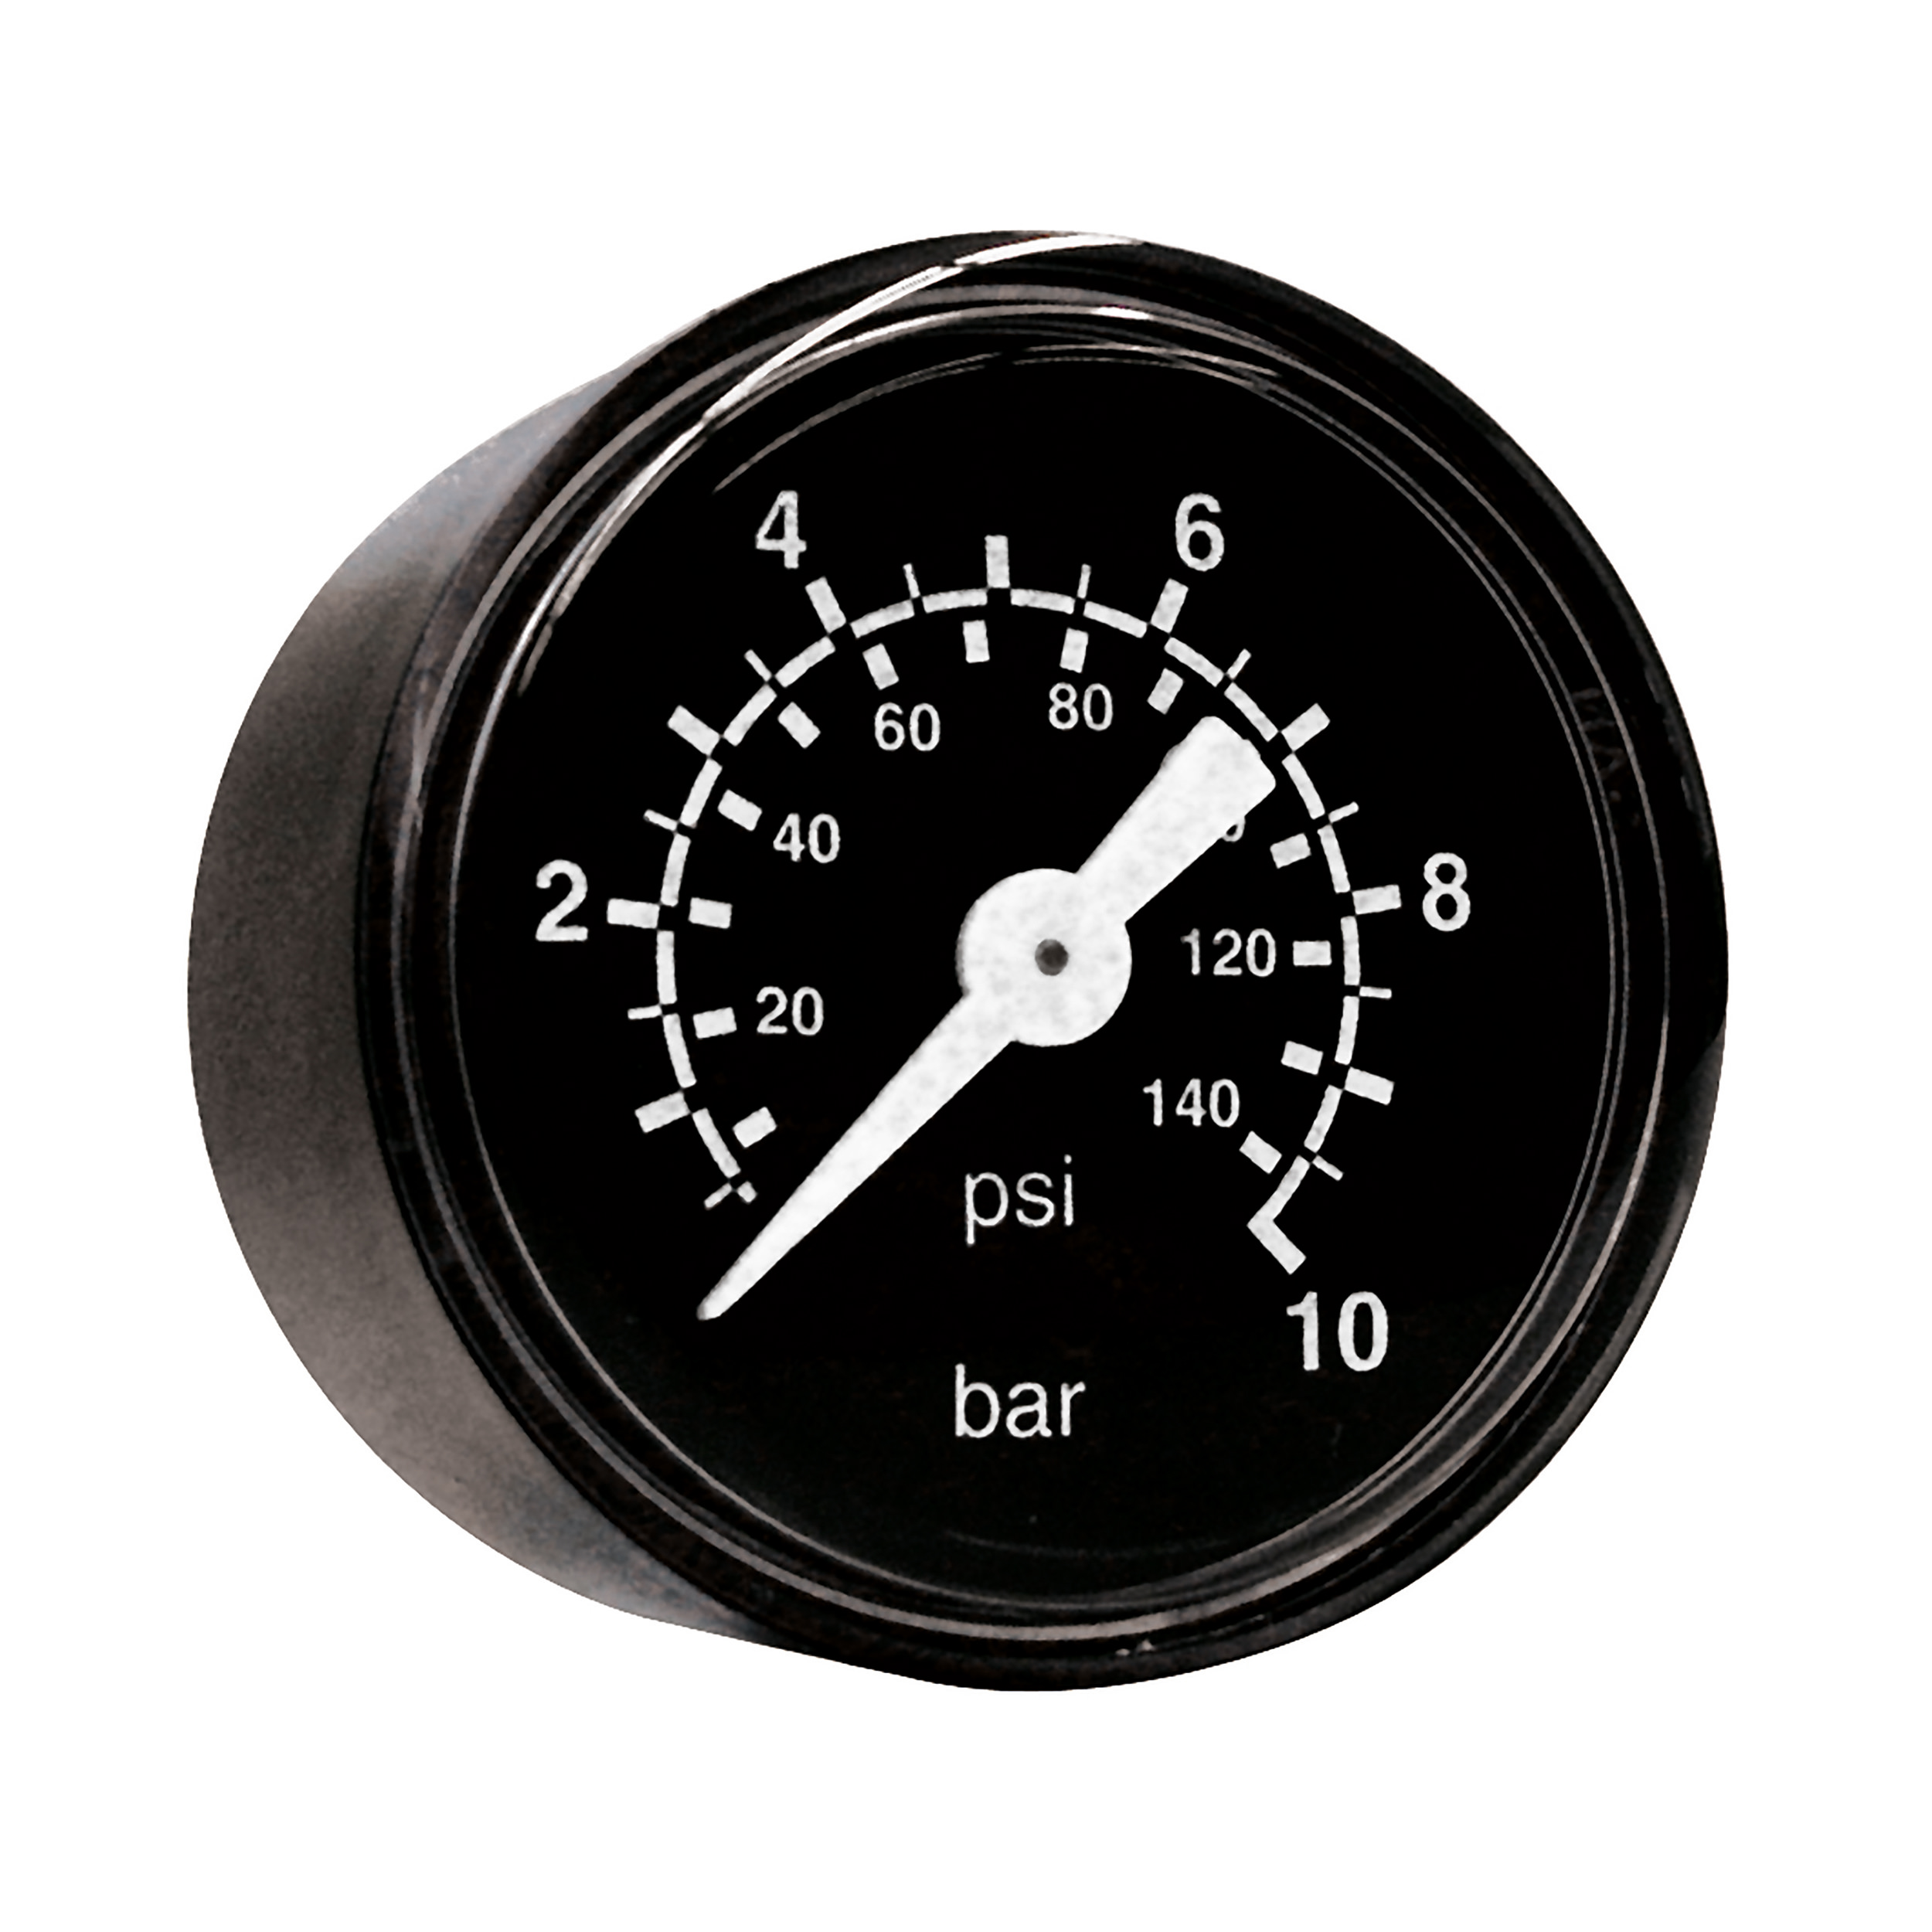 Rohrfeder-Manometer Ø40, Klasse 2,5, Grund/Aufdruck: schwarz/weiß, Anschluss waagrecht: M8 × 1, Anzeigebereich: 0–16 bar